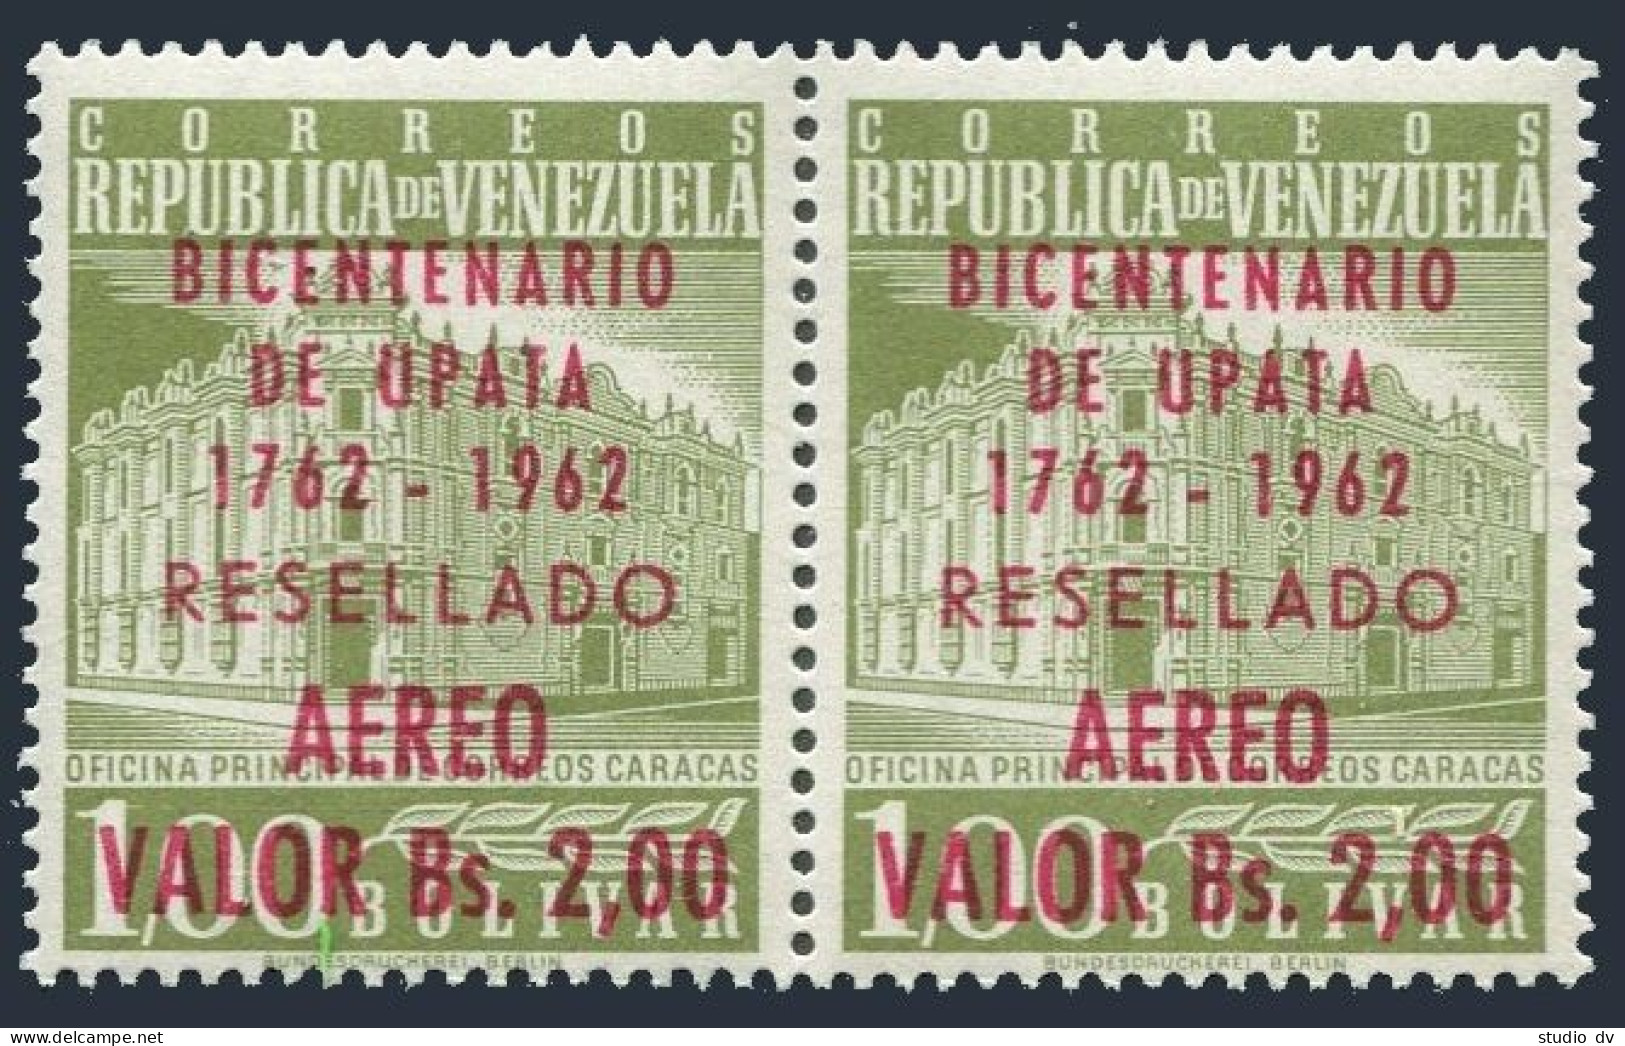 Venezuela C807 Pair,MNH.Mi 1457. Upata,village In State Of Bolivar,200,1962. - Venezuela